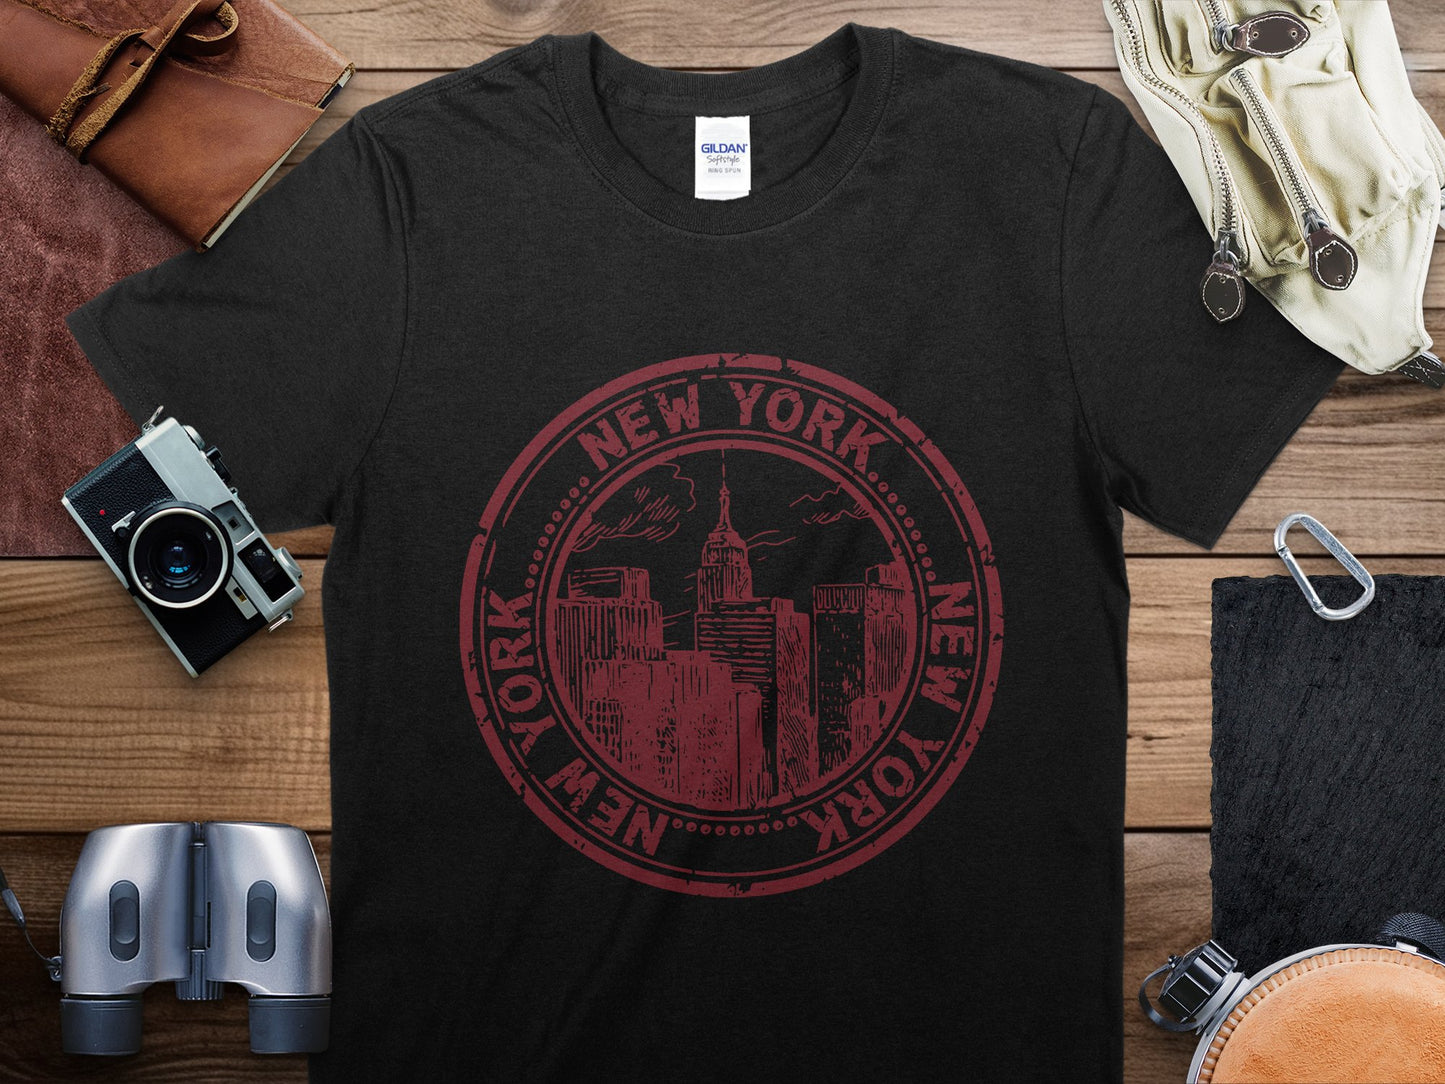 New York 1 Stamp Travel T-Shirt, New York 1 Travel Shirt